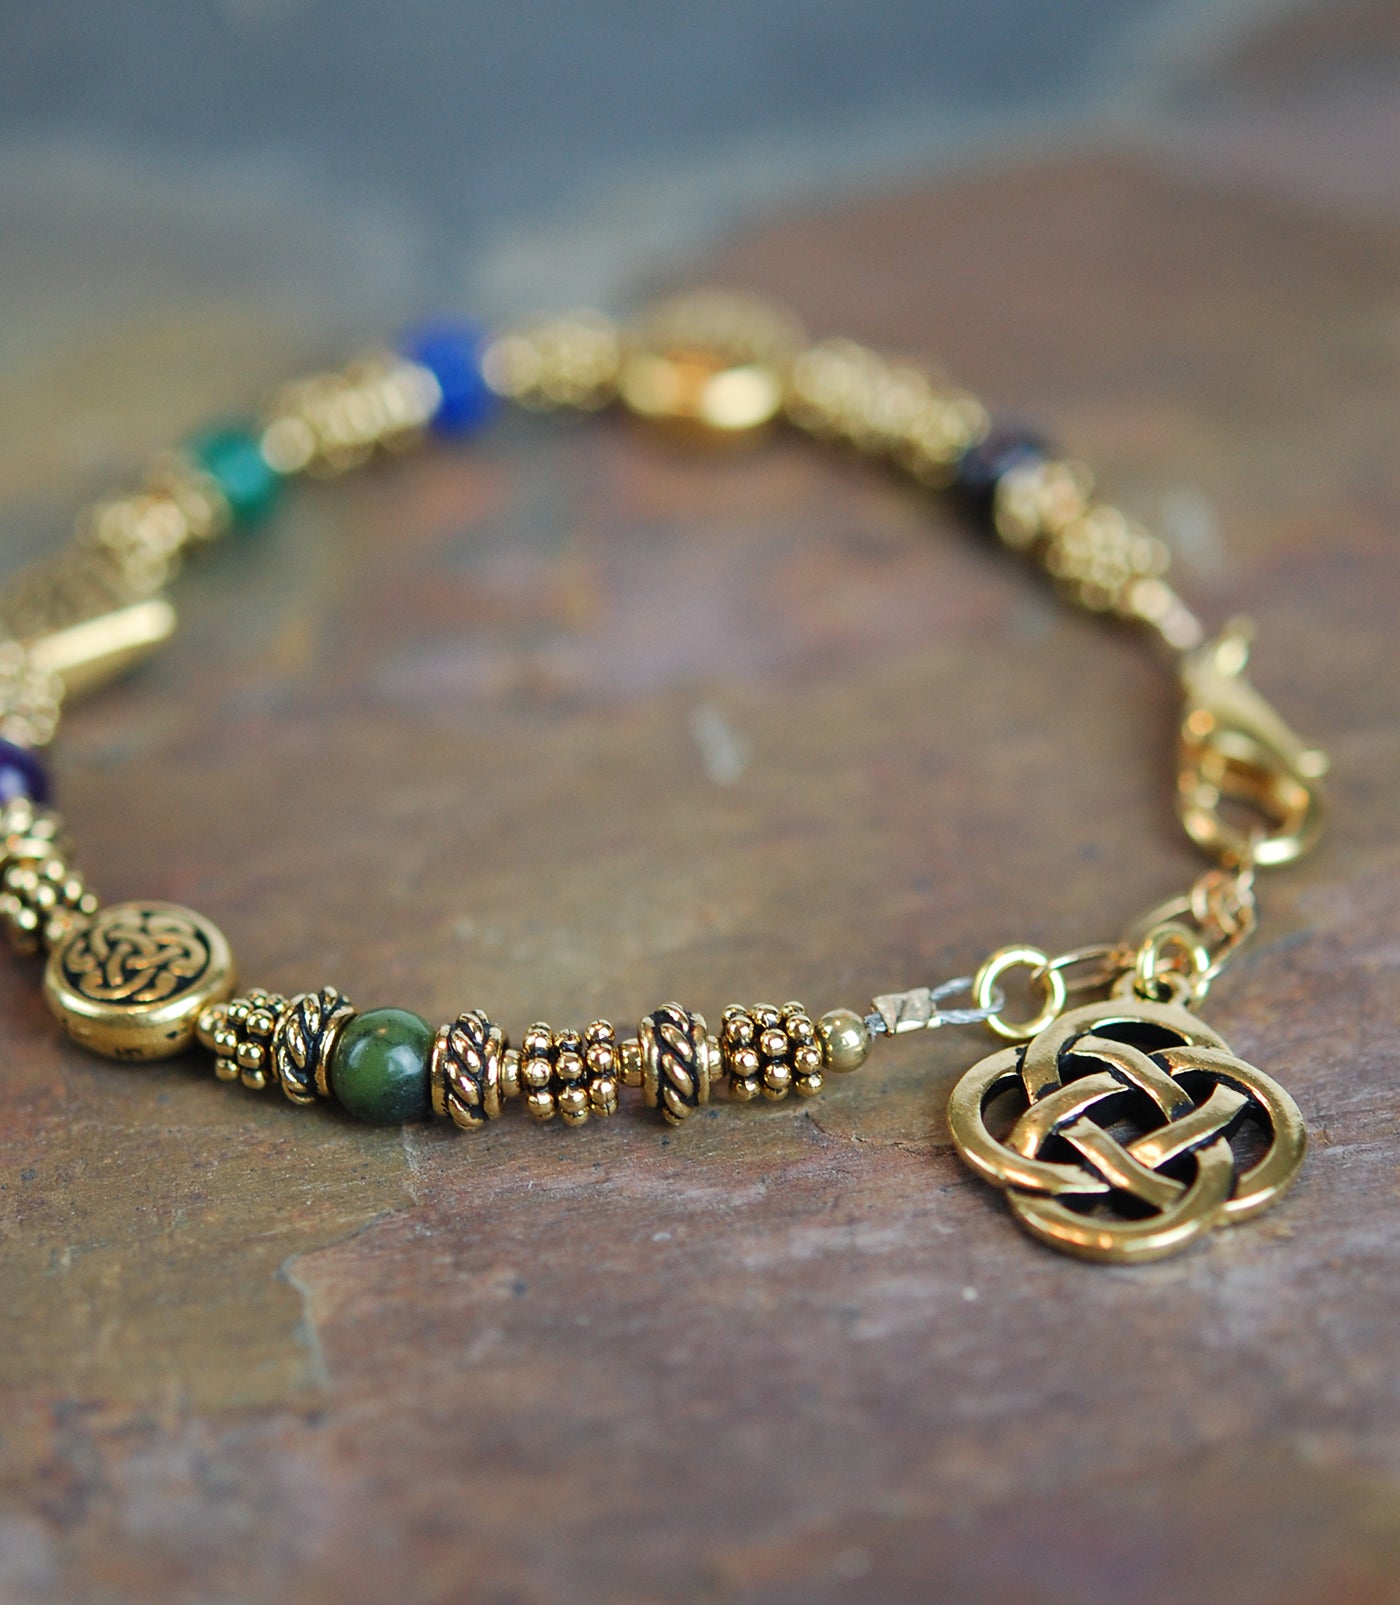 Sacred Numbers Celtic Bracelet in Antique Gold